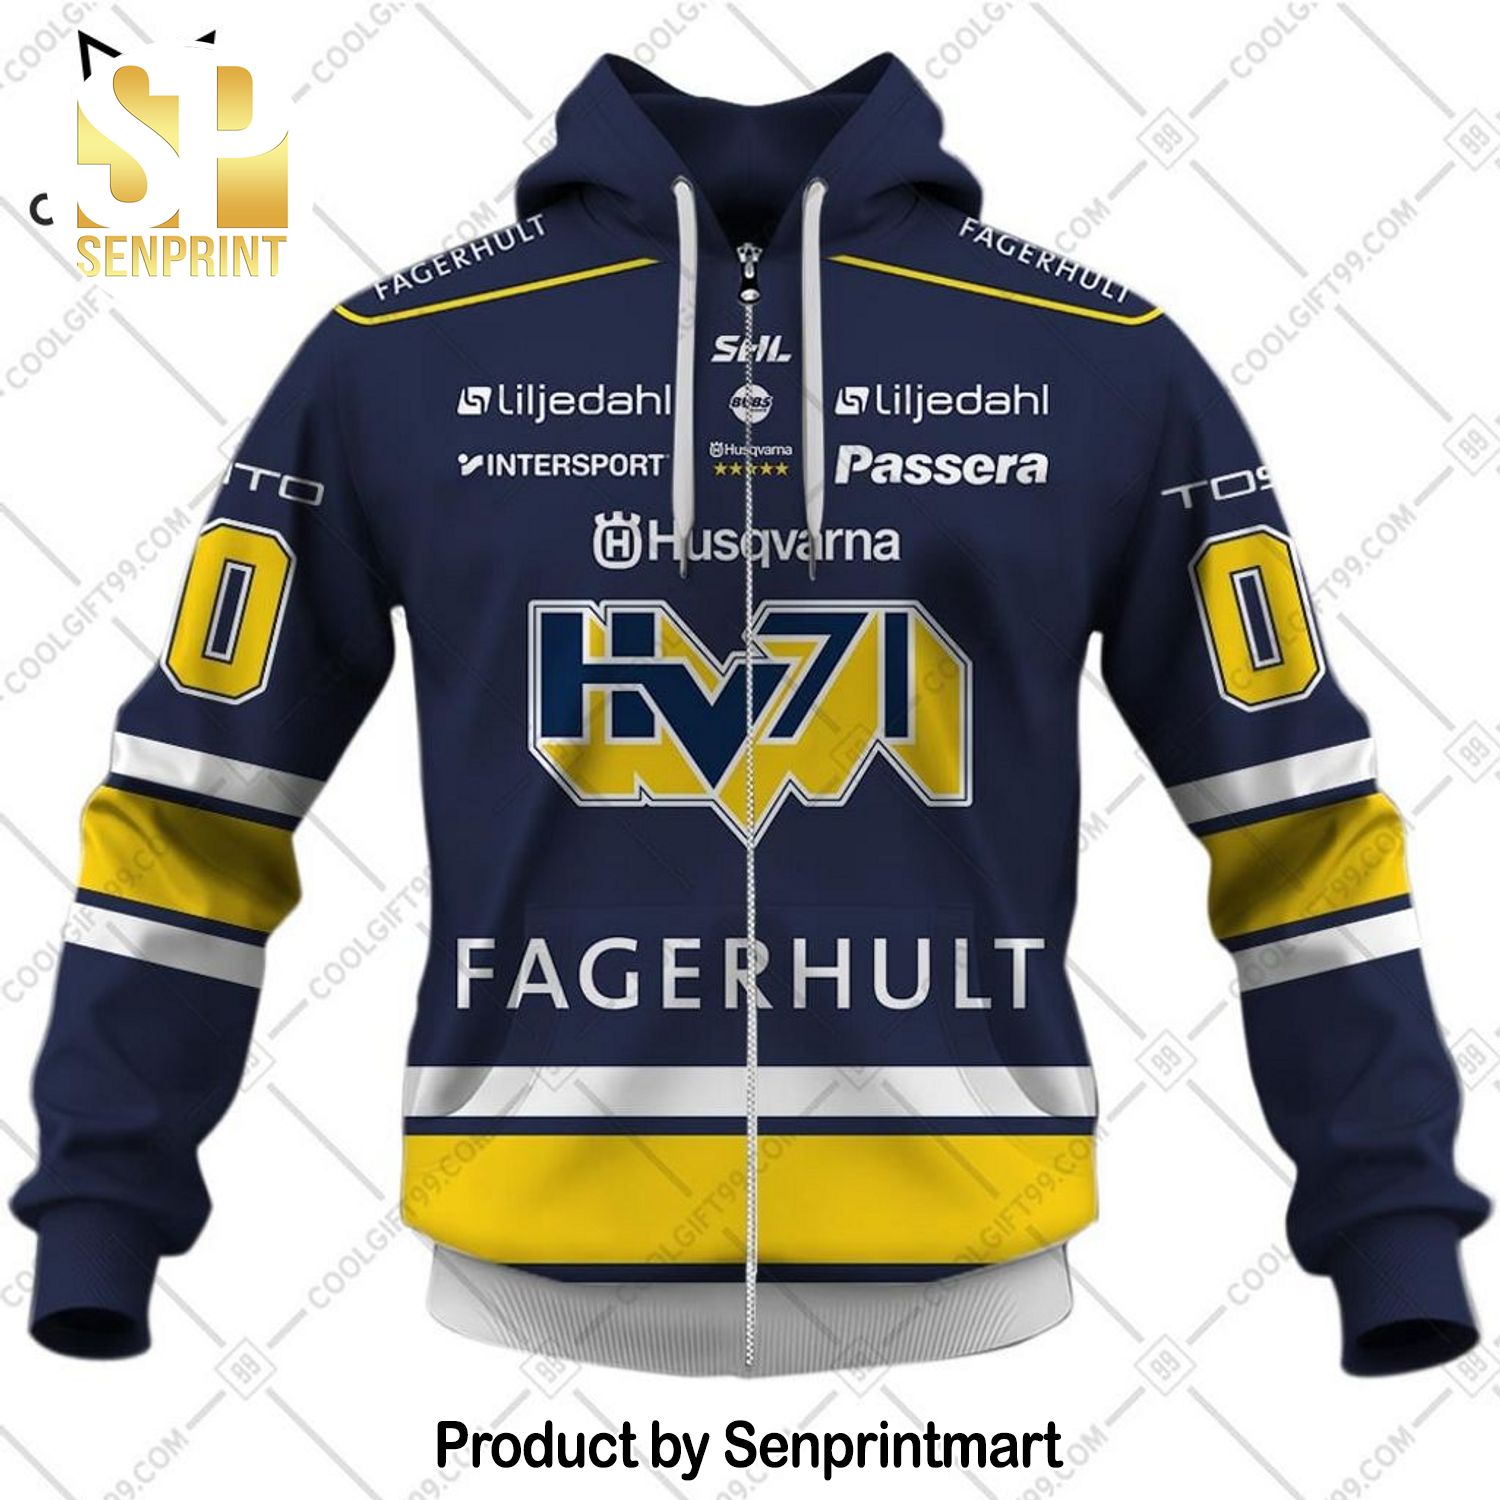 SHL HV71 Fagerhult Logo Design Home Full Printed Shirt